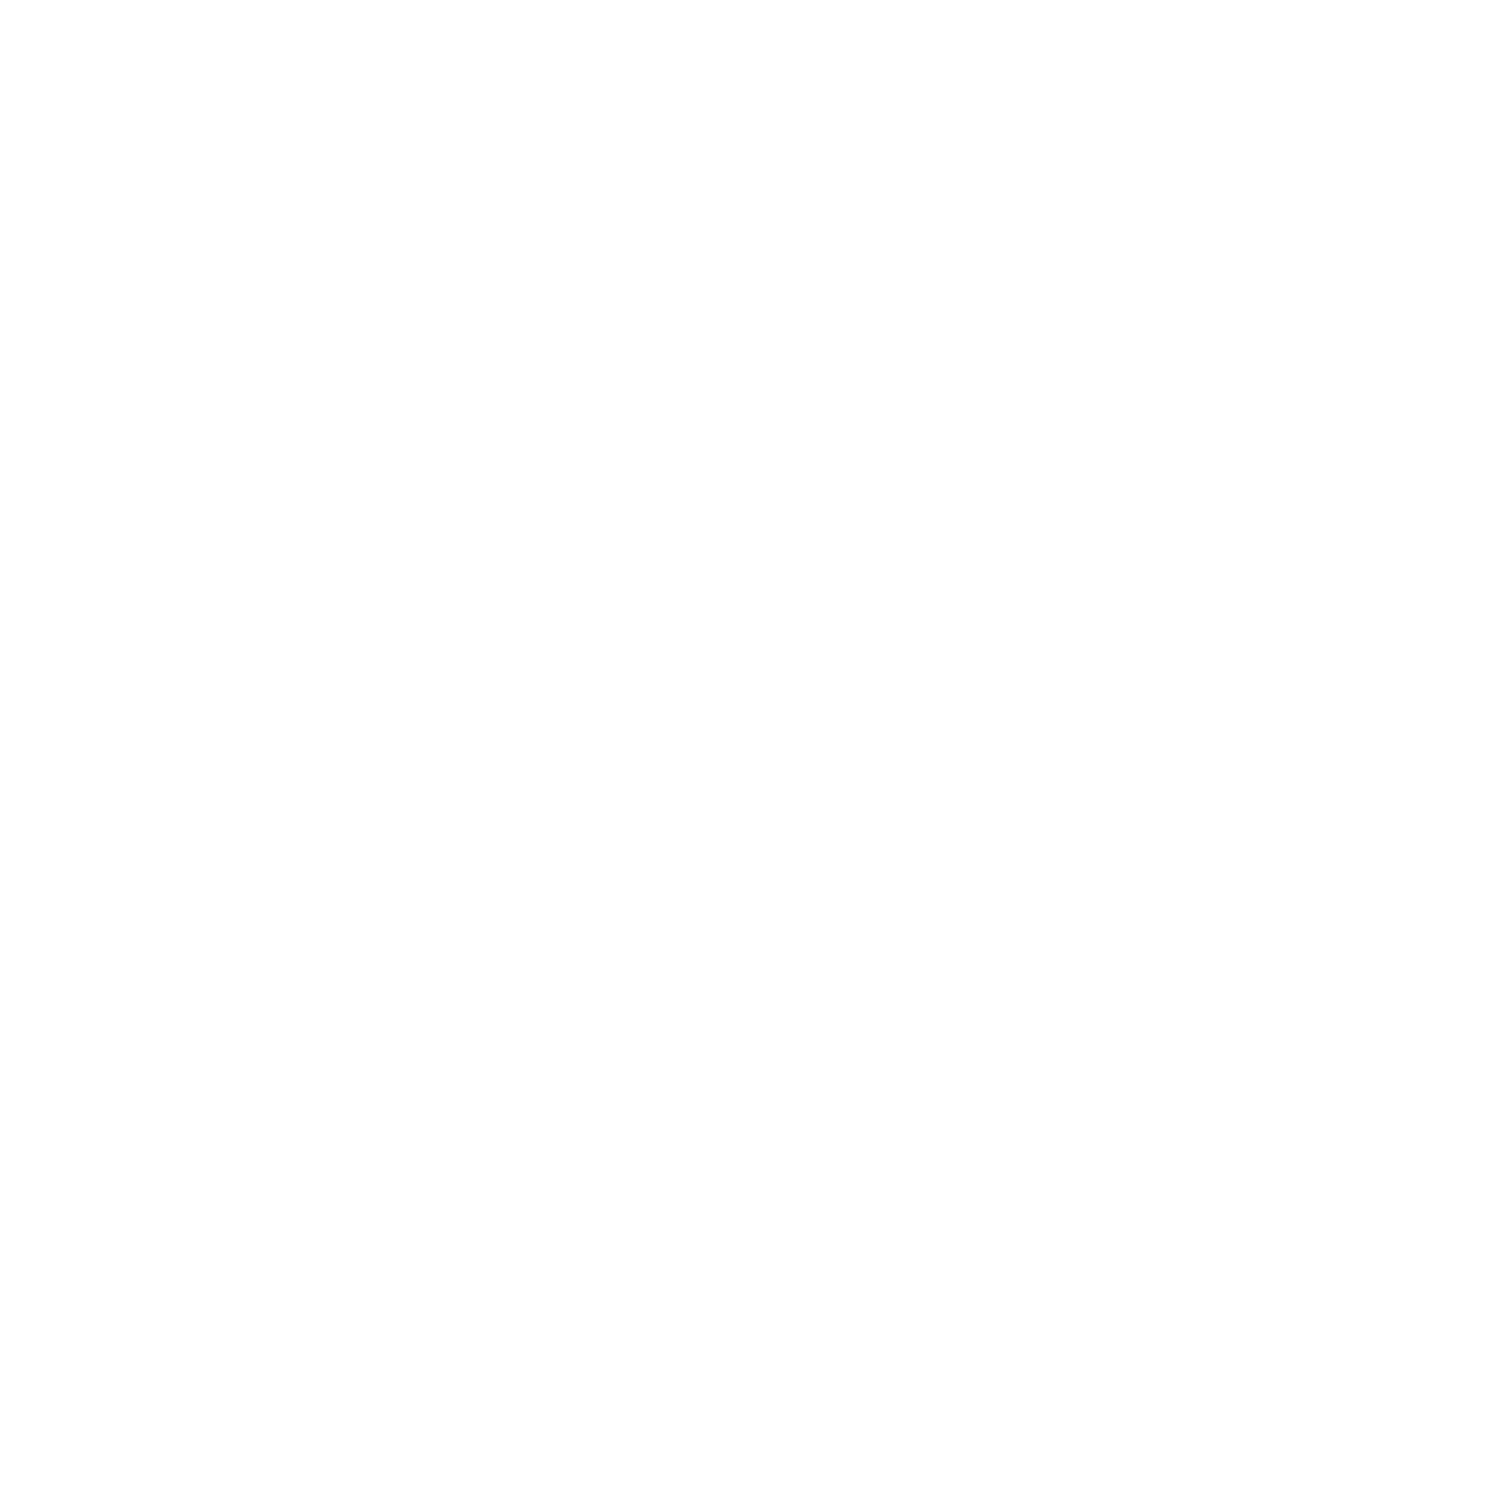 regiolekstroom-01-01